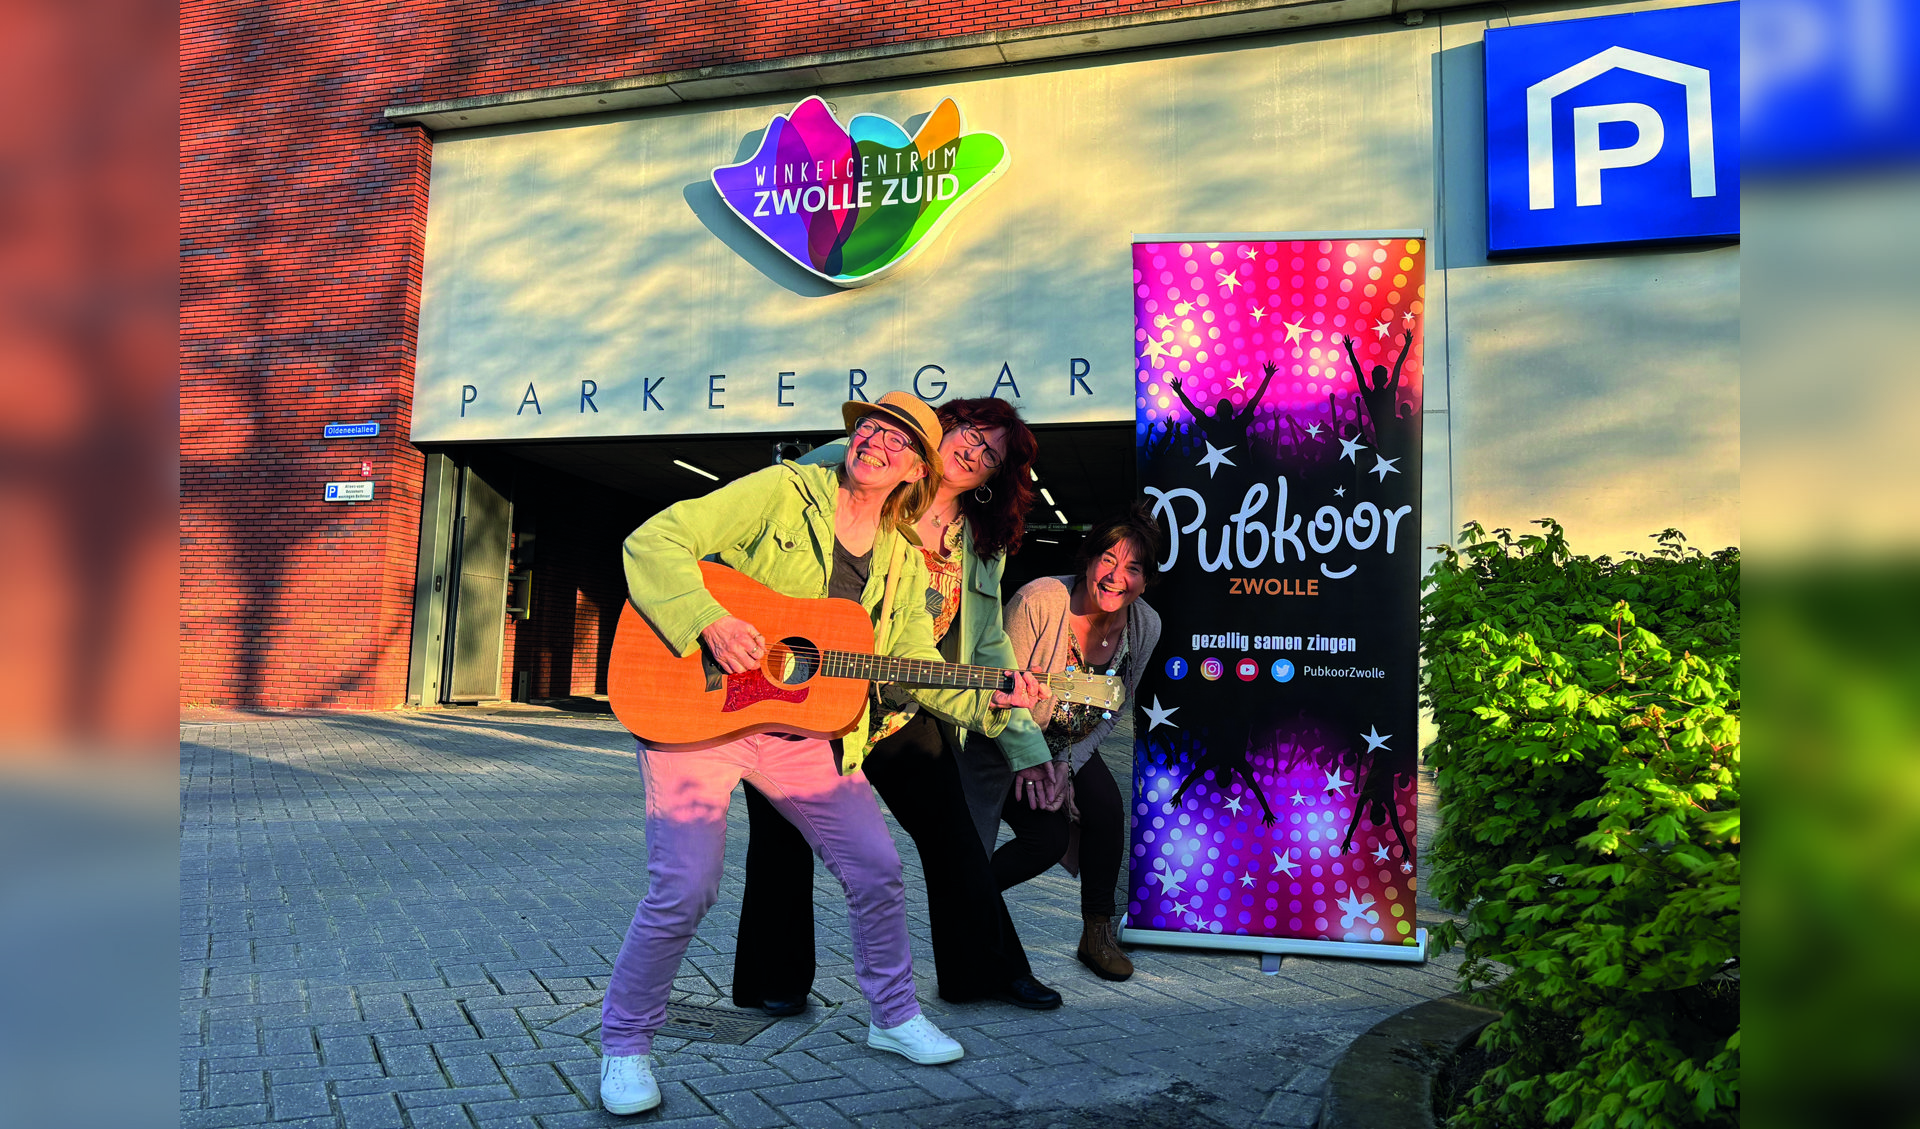 Op zondagmiddag 2 juni samen zingen in de parkeergarage van winkelcentrum Zwolle Zuid